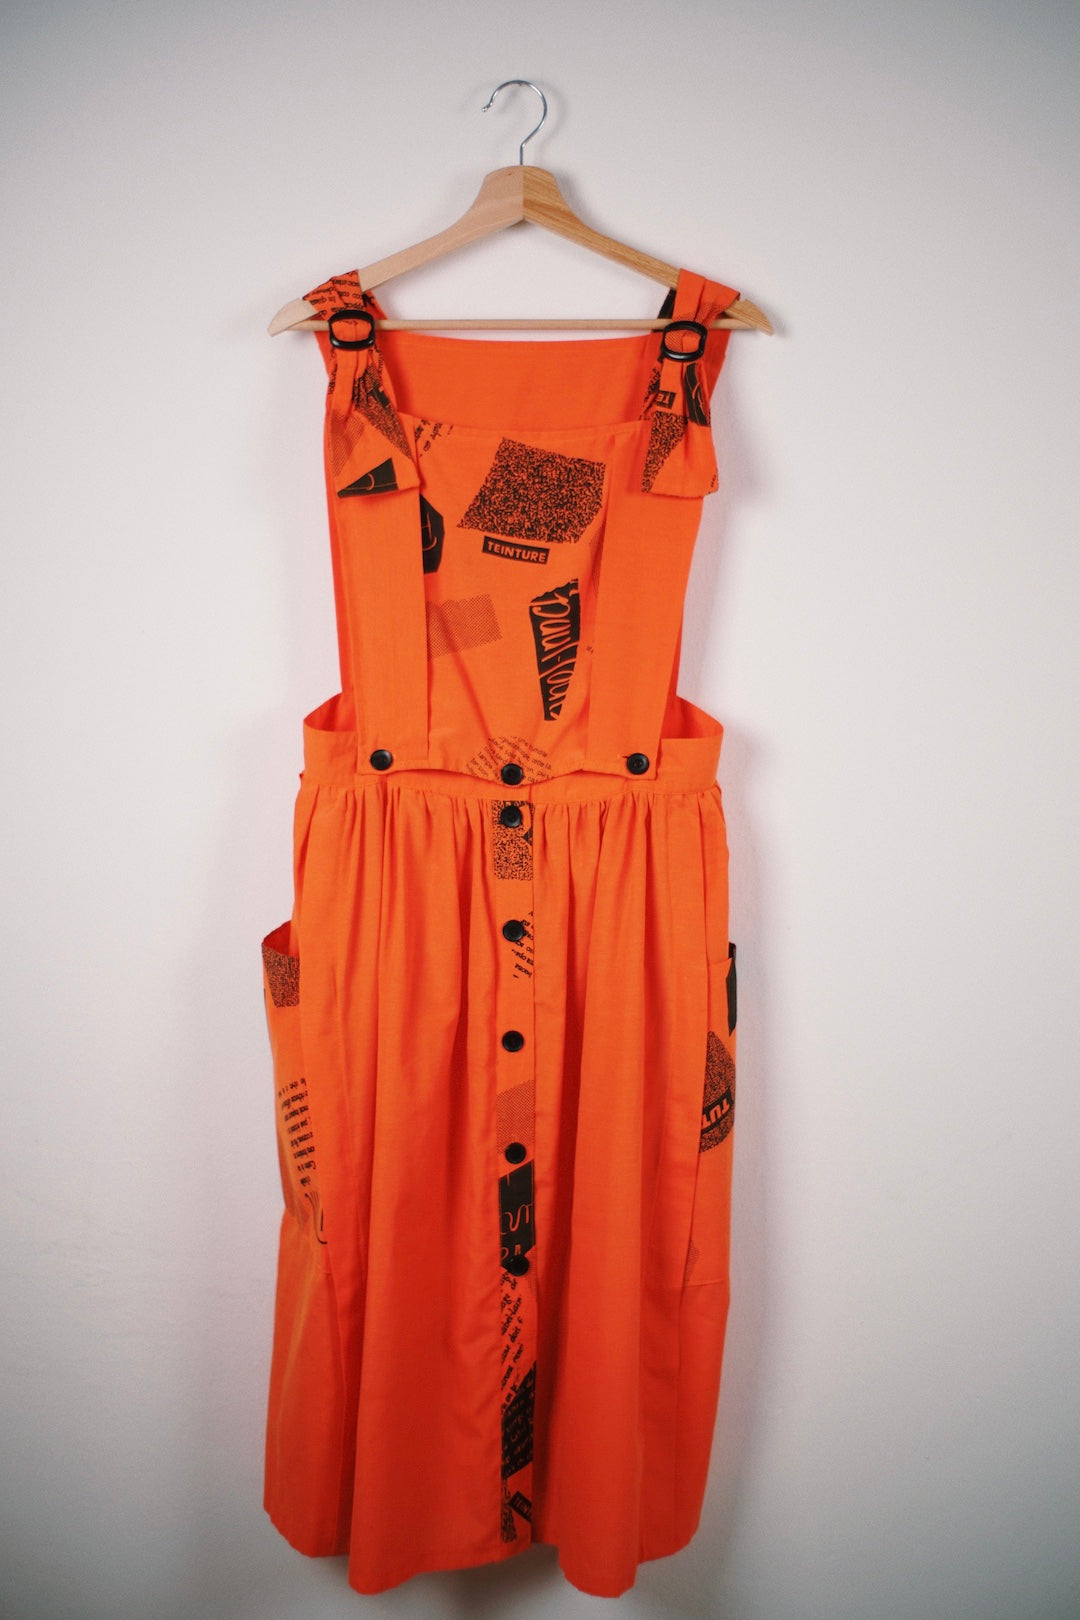 Vintage 80's apron dress